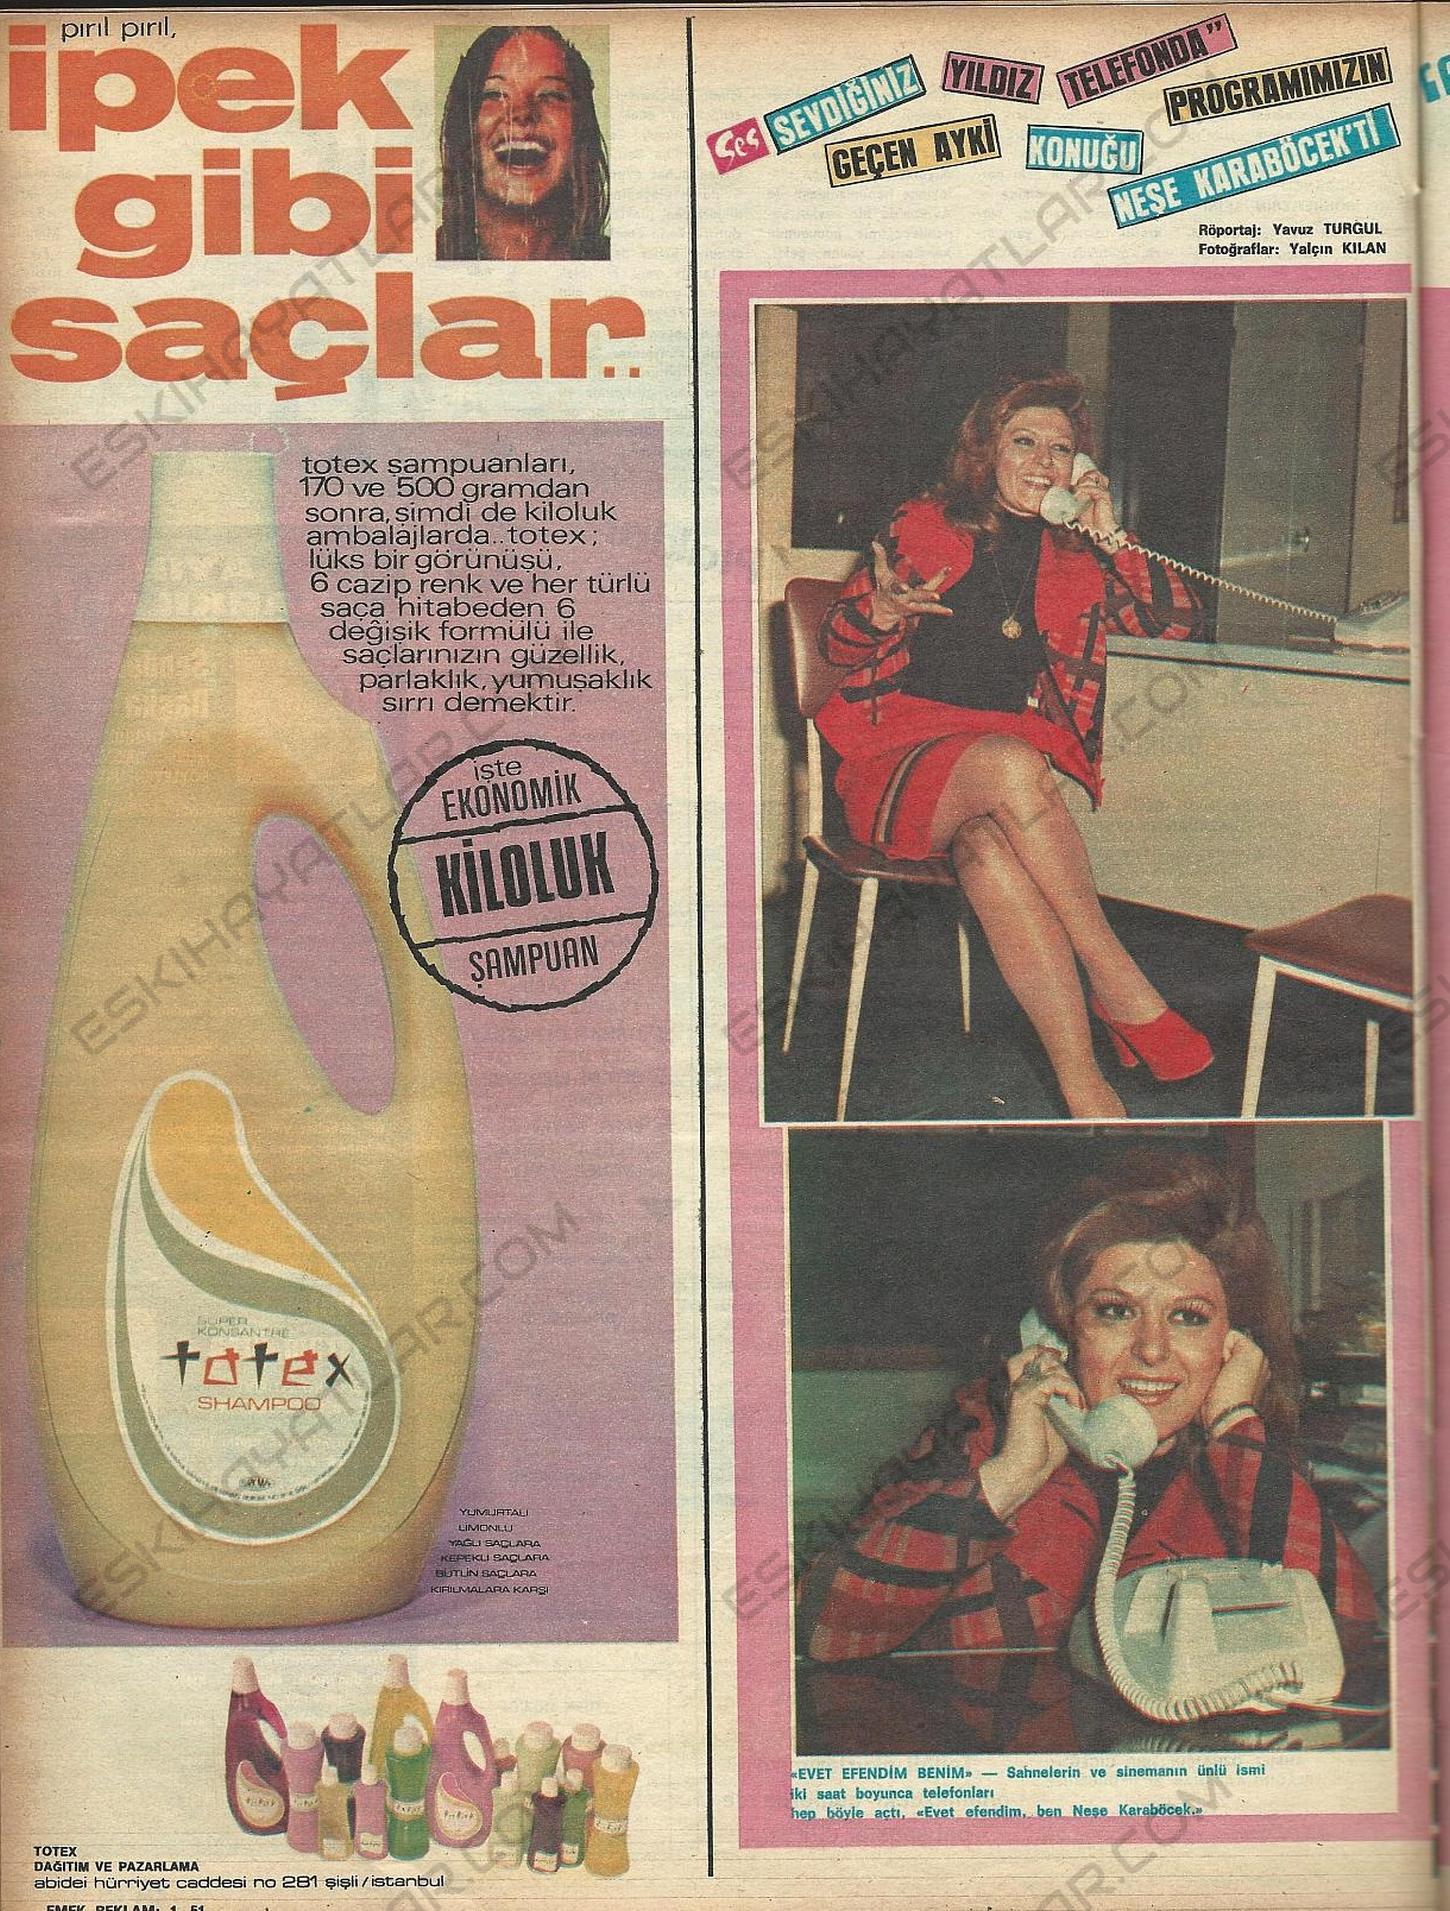 nese-karabocek-roportaji-1973-ses-dergisi-70-lerde-telefon-kullanimi (6)